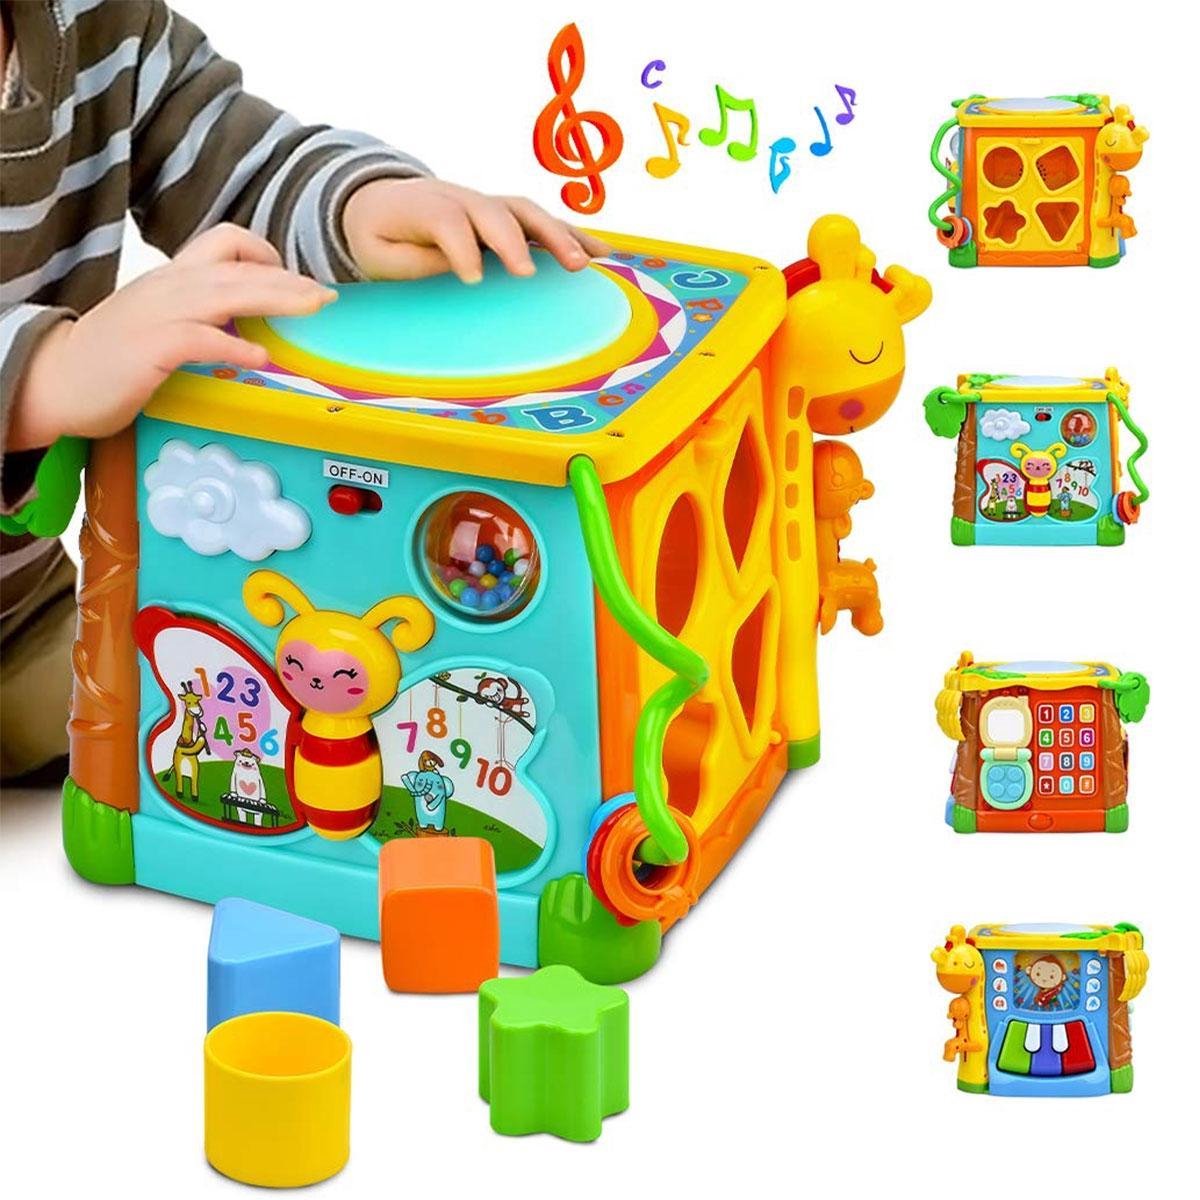 Baby Muziek Trommel - Drum Speelgoed Kind 6-12 maanden | bol.com